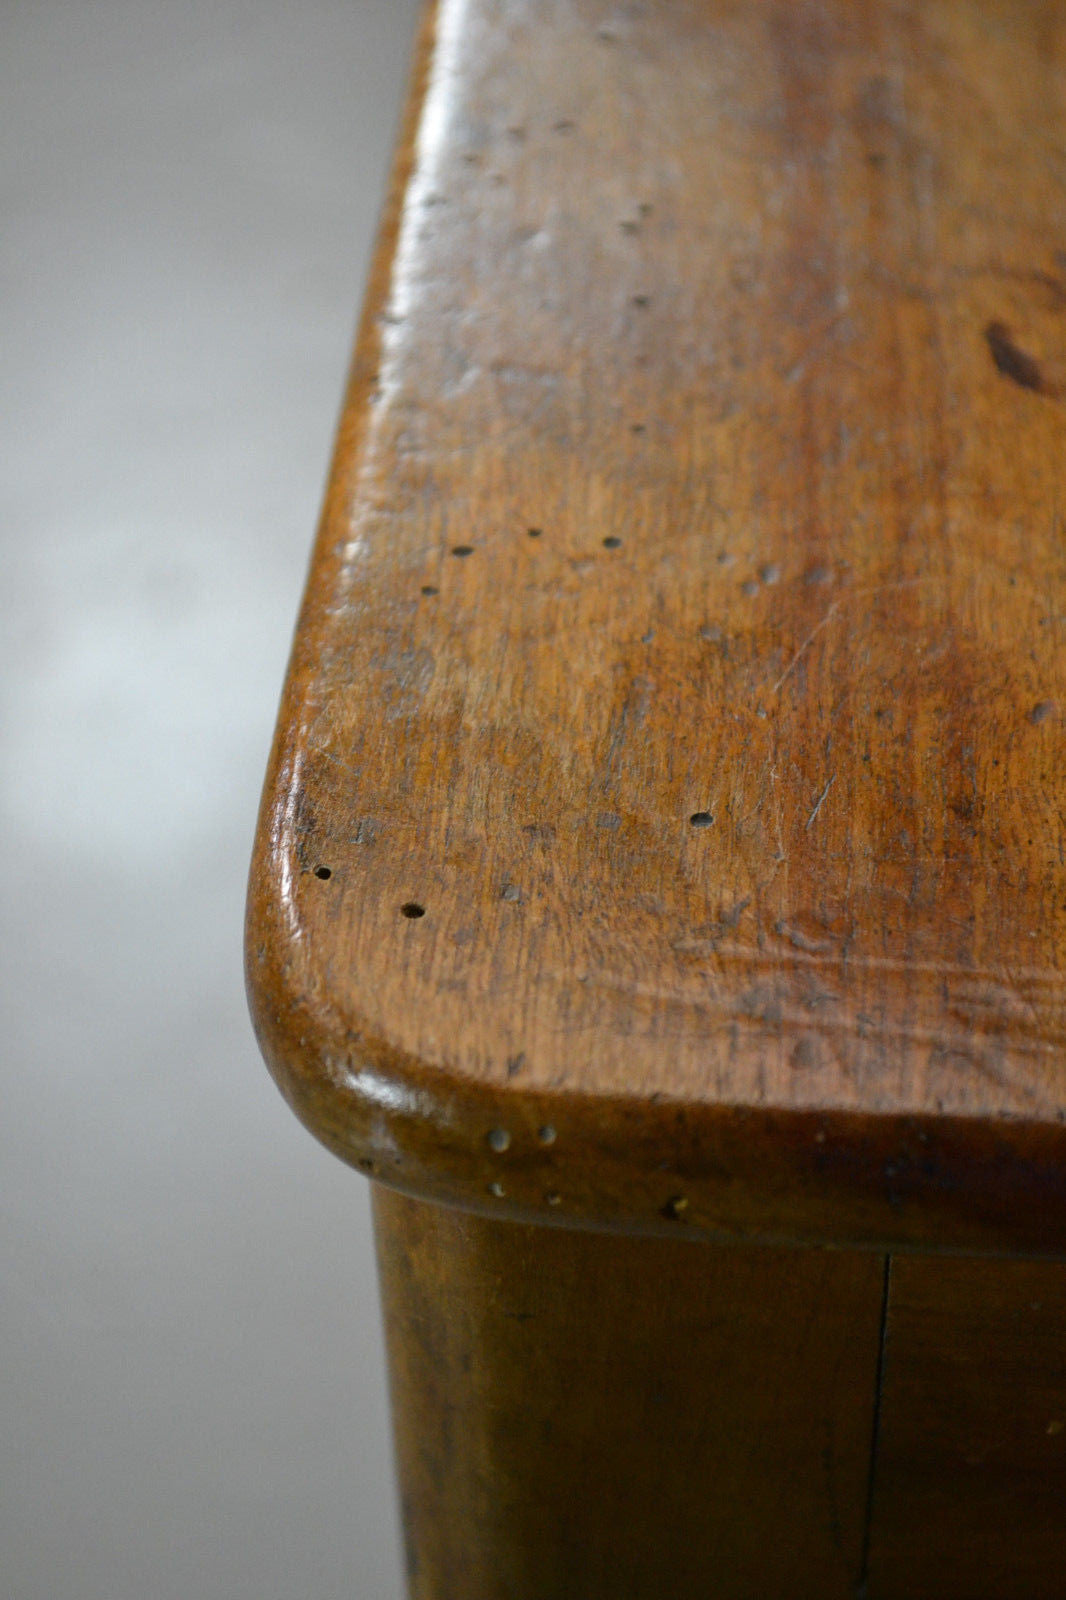 Pair Antique 19th Century Mahogany Short Stools - Kernow Furniture